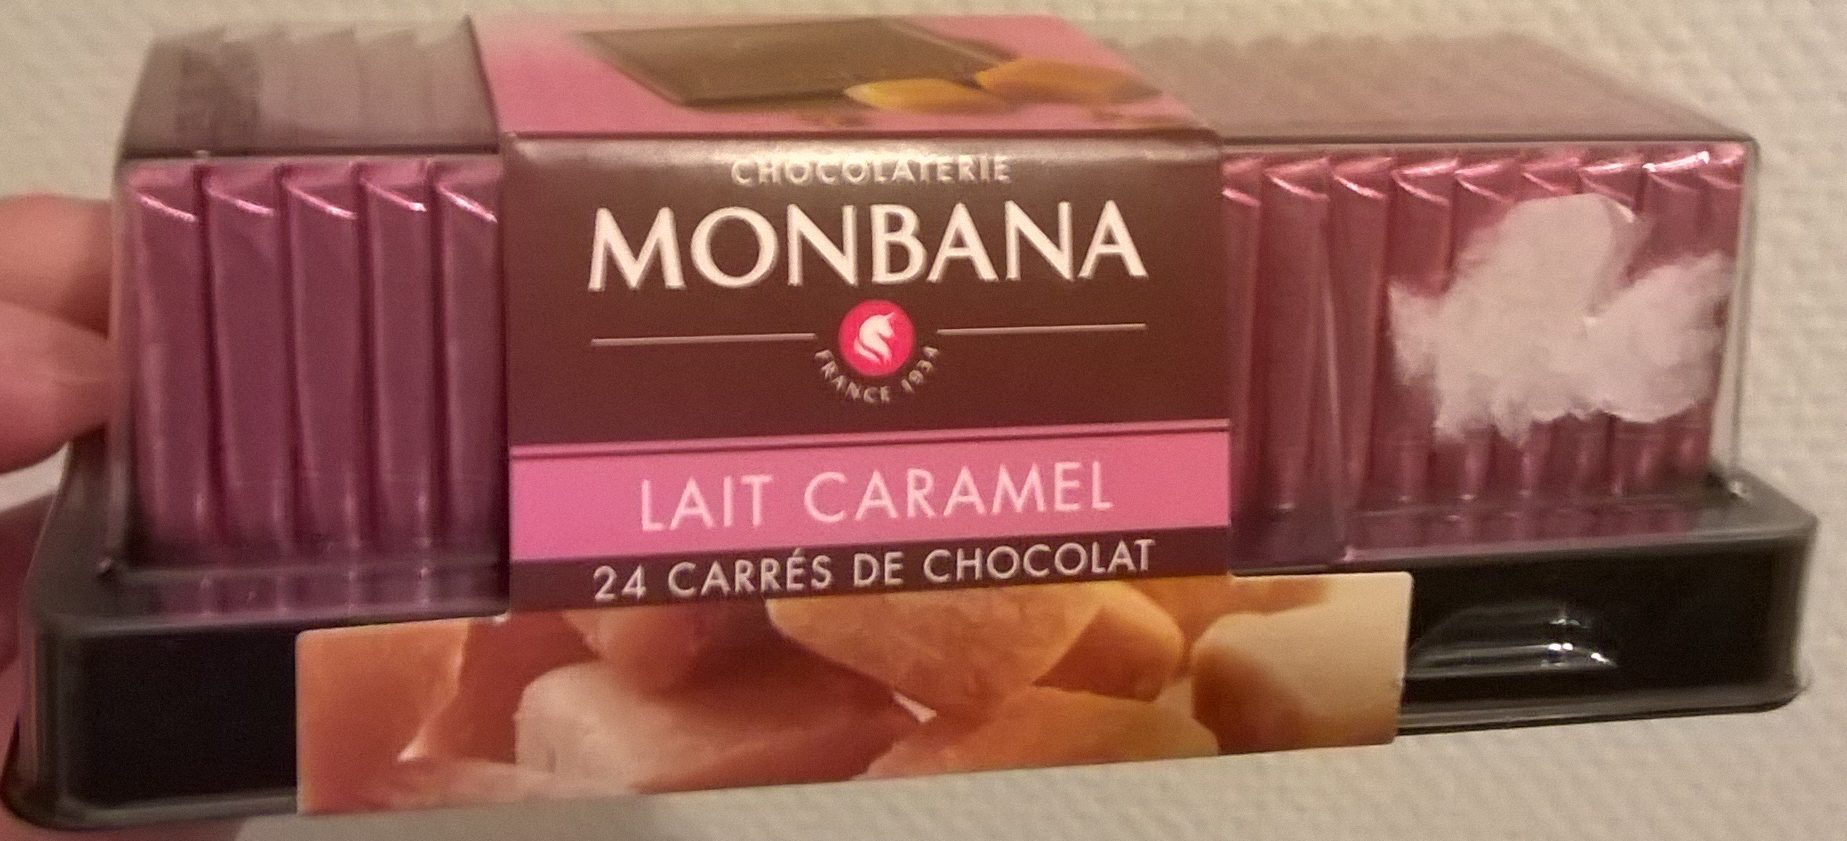 Lait Caramel 24 carrés de chocolat - Product - fr